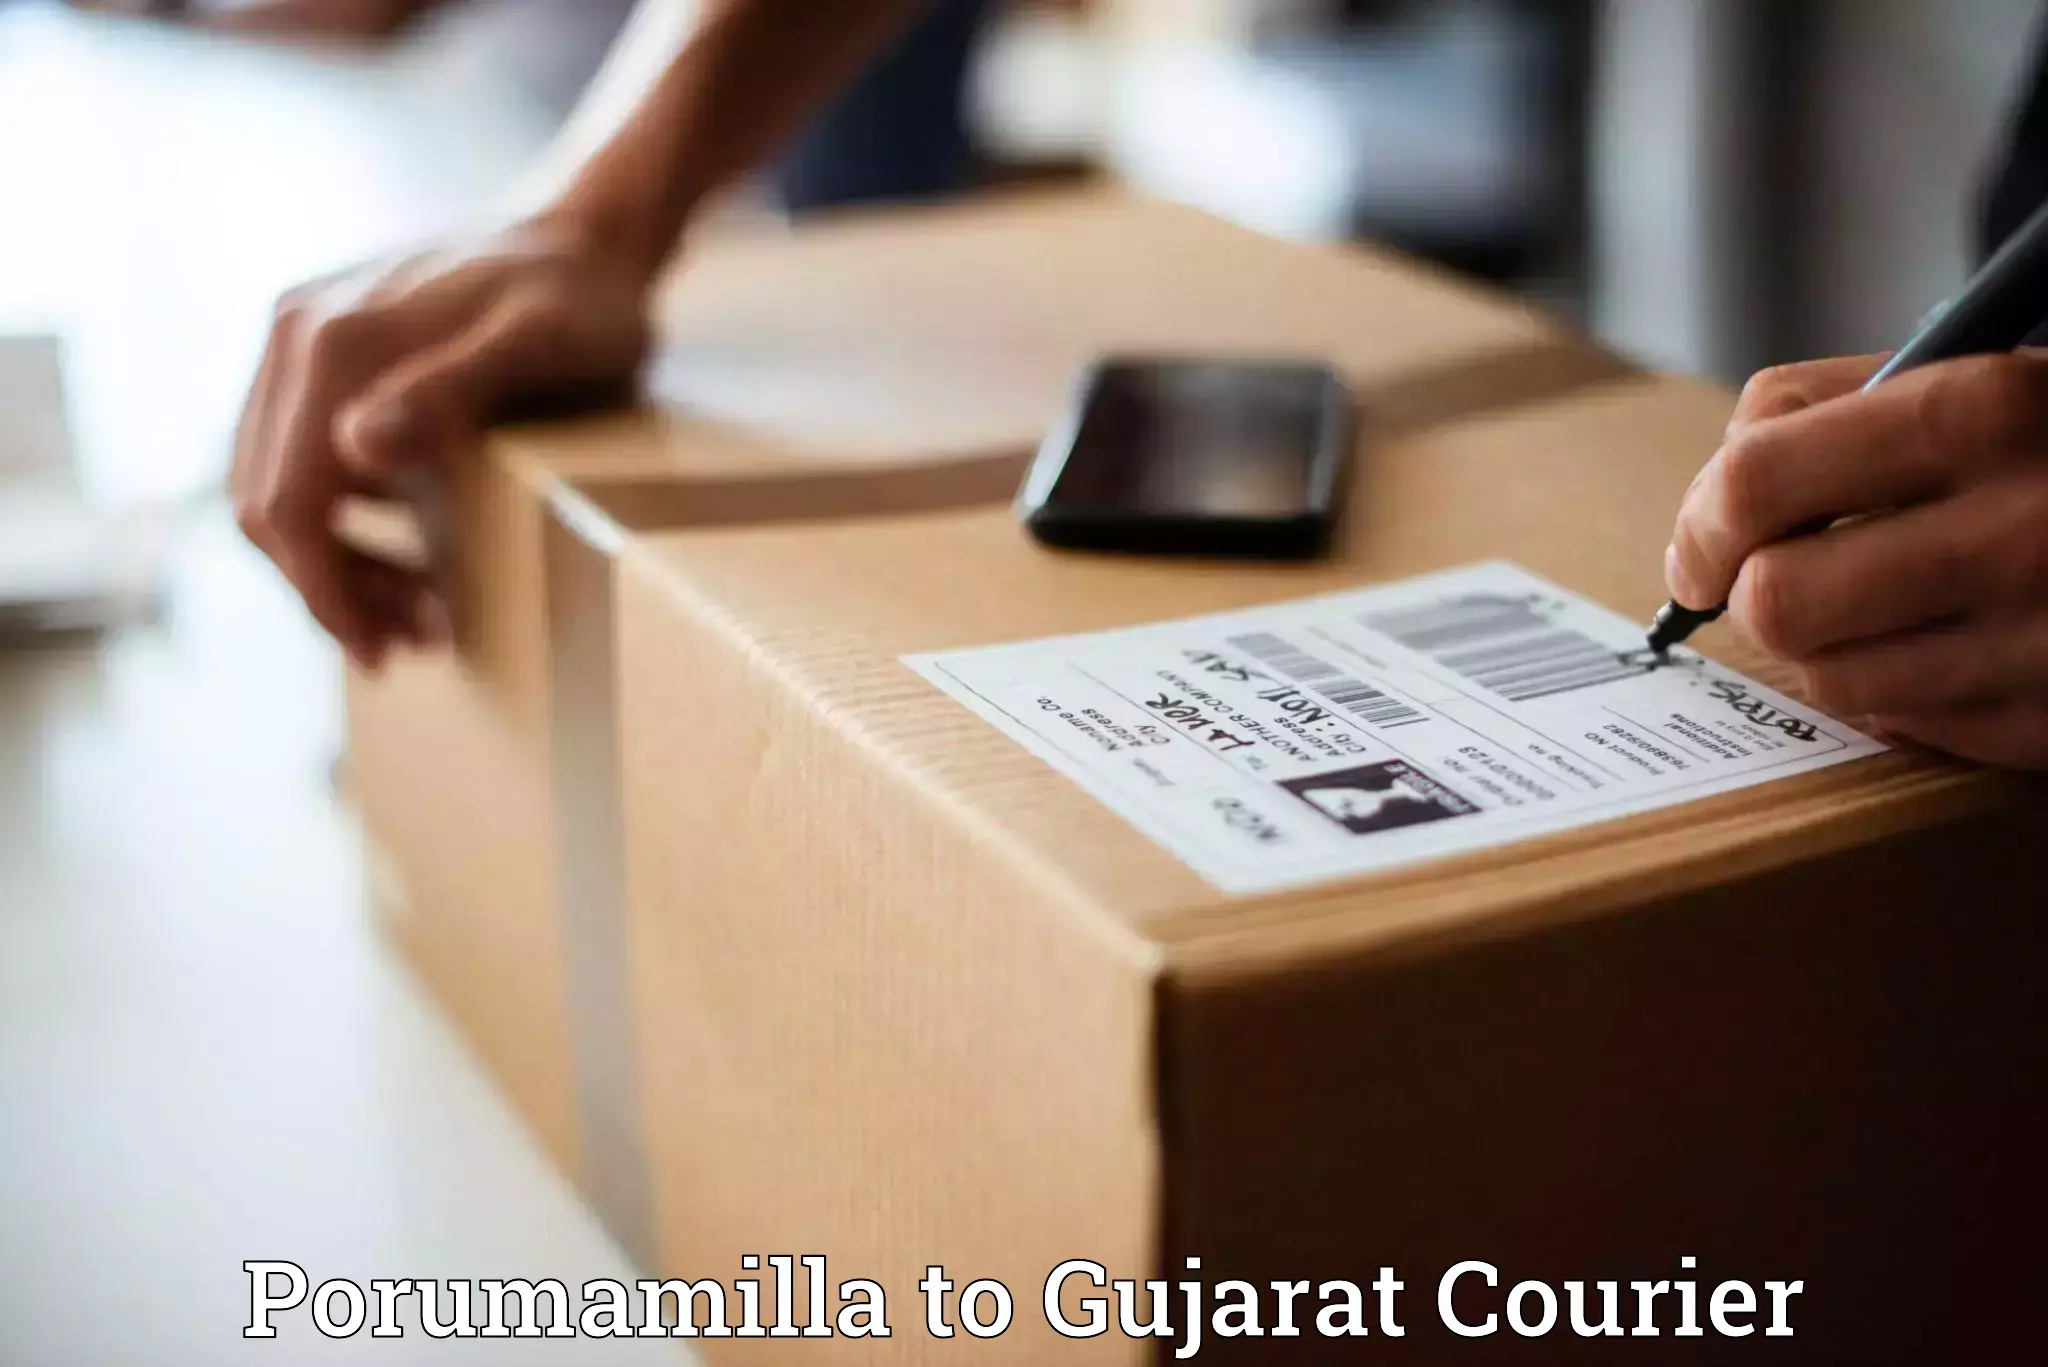 24/7 courier service in Porumamilla to Gujarat